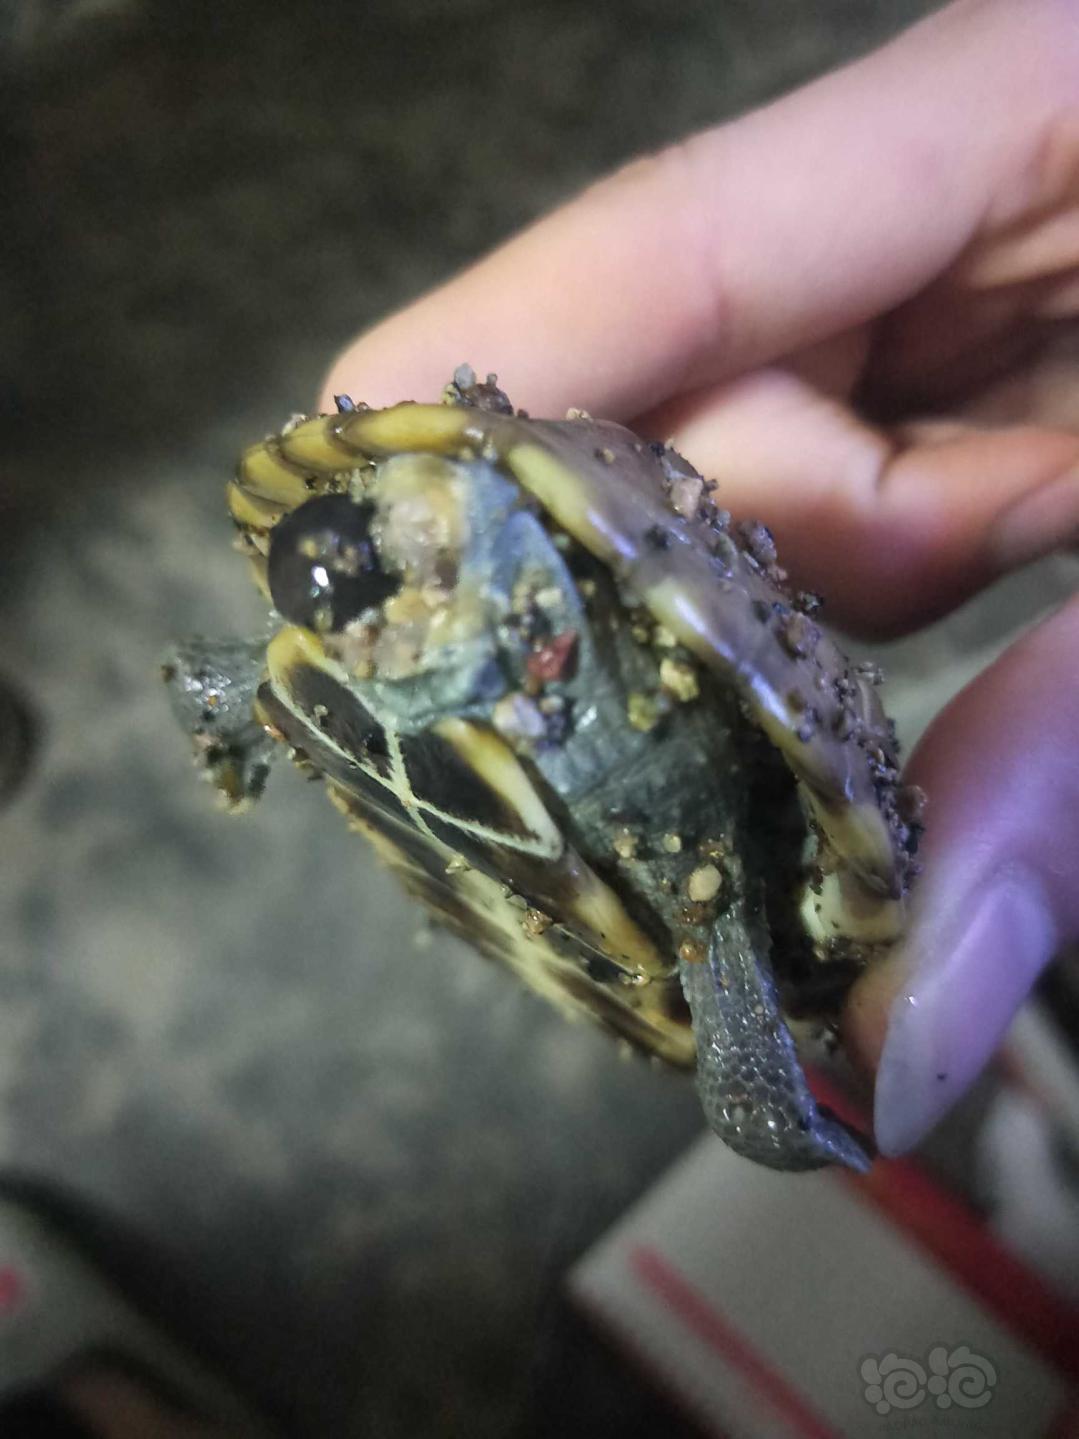 巴西彩龟尾部出现一团黑色物质 怎样防止龟互相咬尾